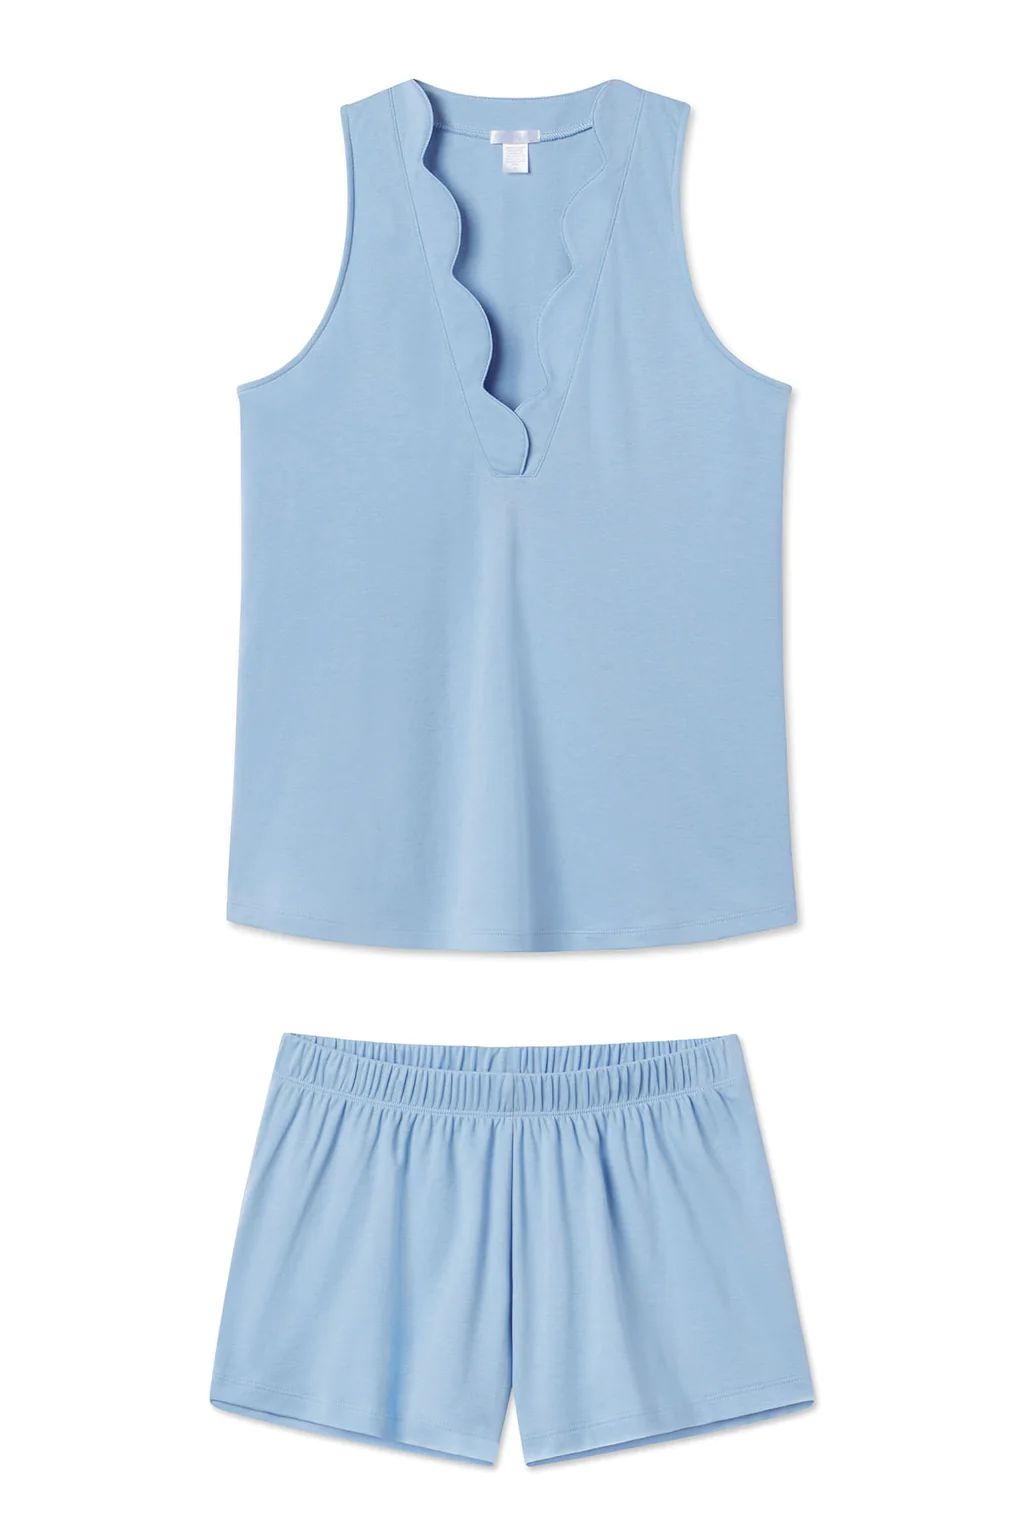 Pima Scallop Shorts Set in Chambray Blue | Lake Pajamas